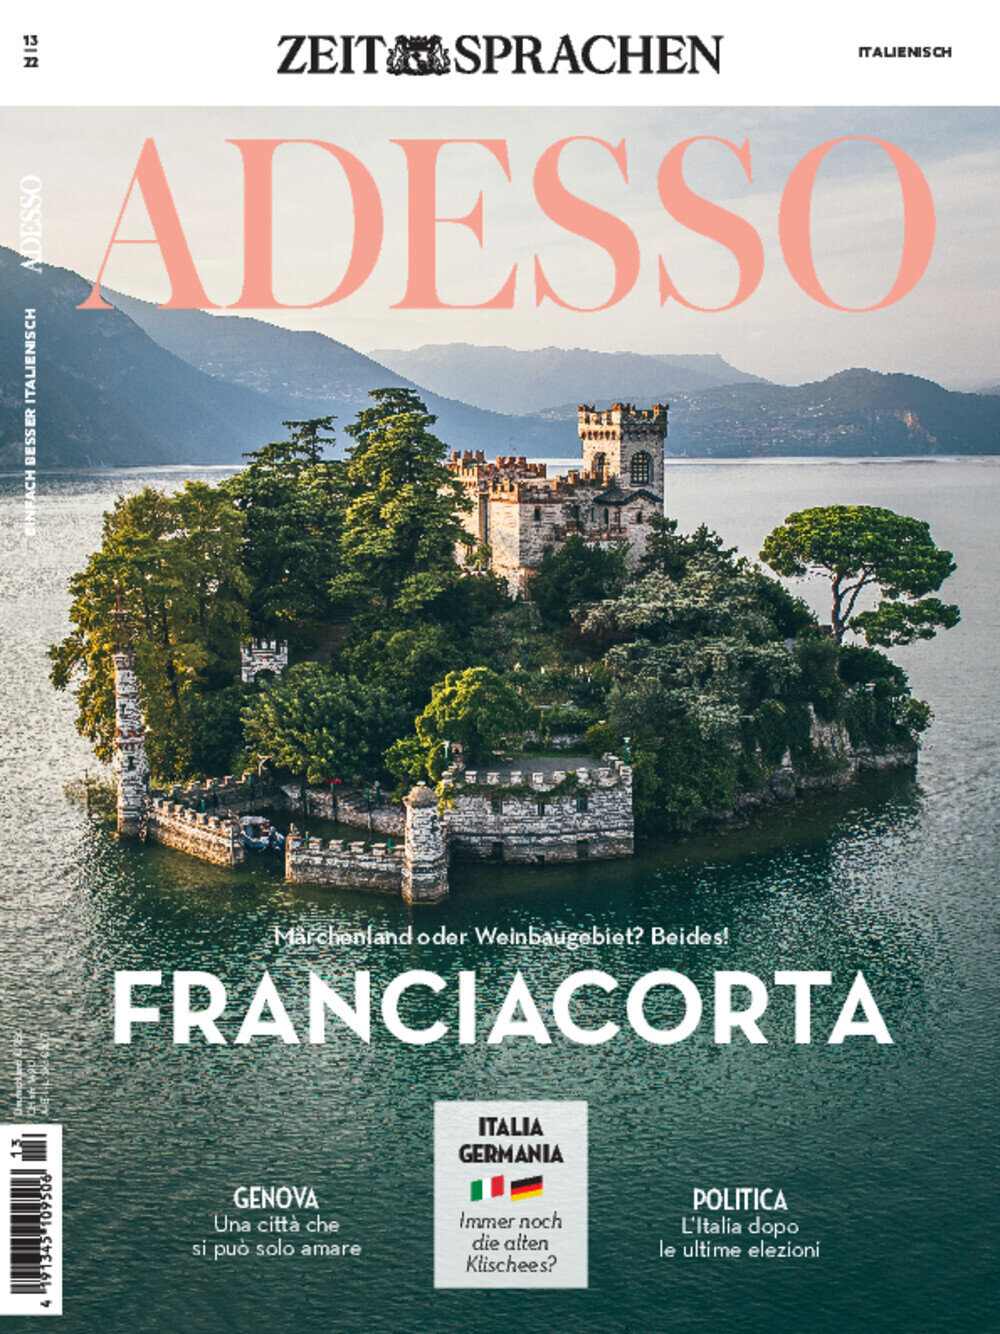 ADESSO eMagazine 13/2022